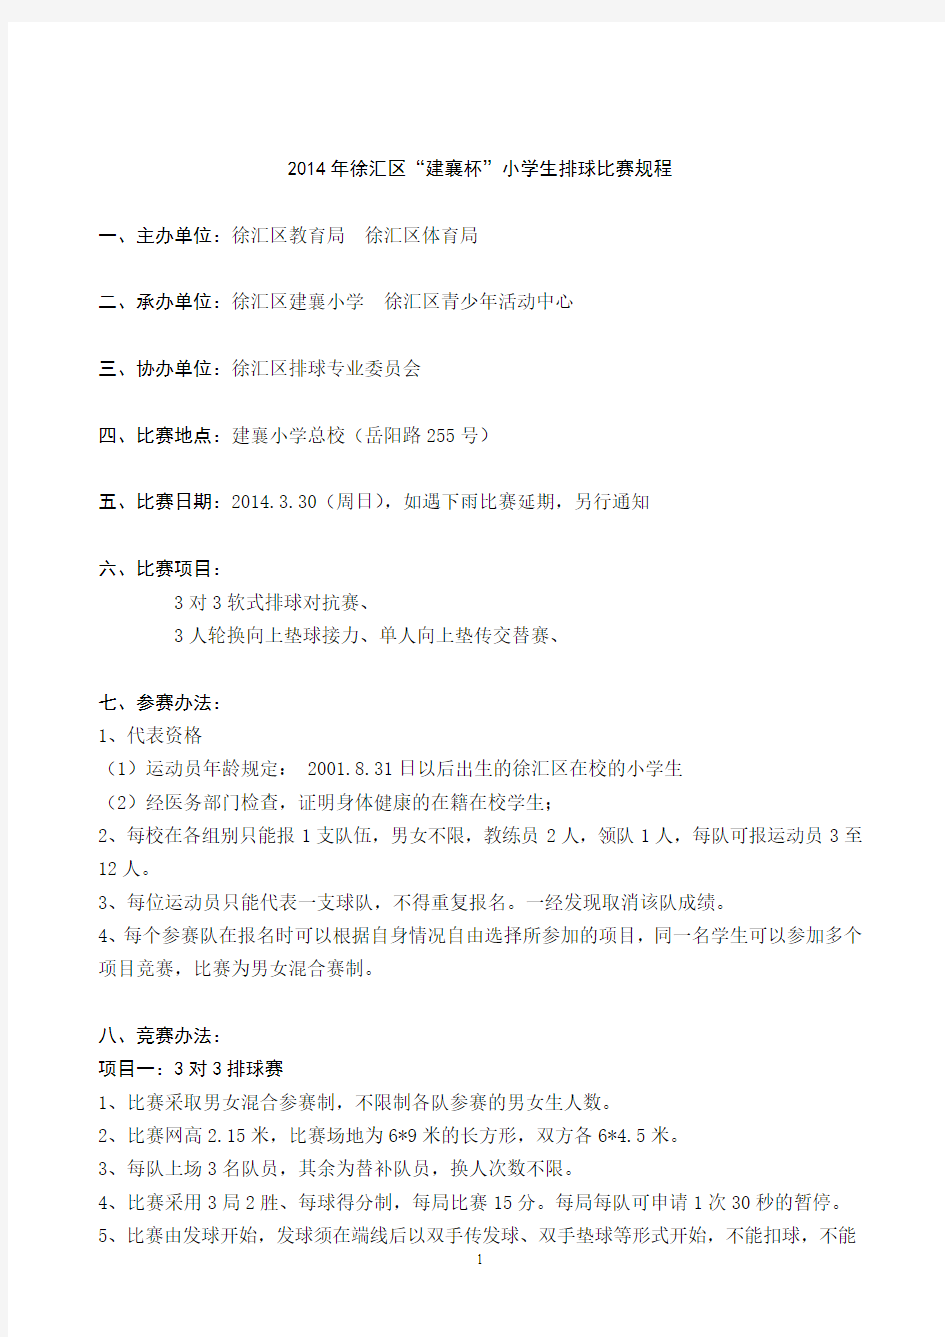 2014年徐汇区“建襄杯”小学生排球比赛秩序册